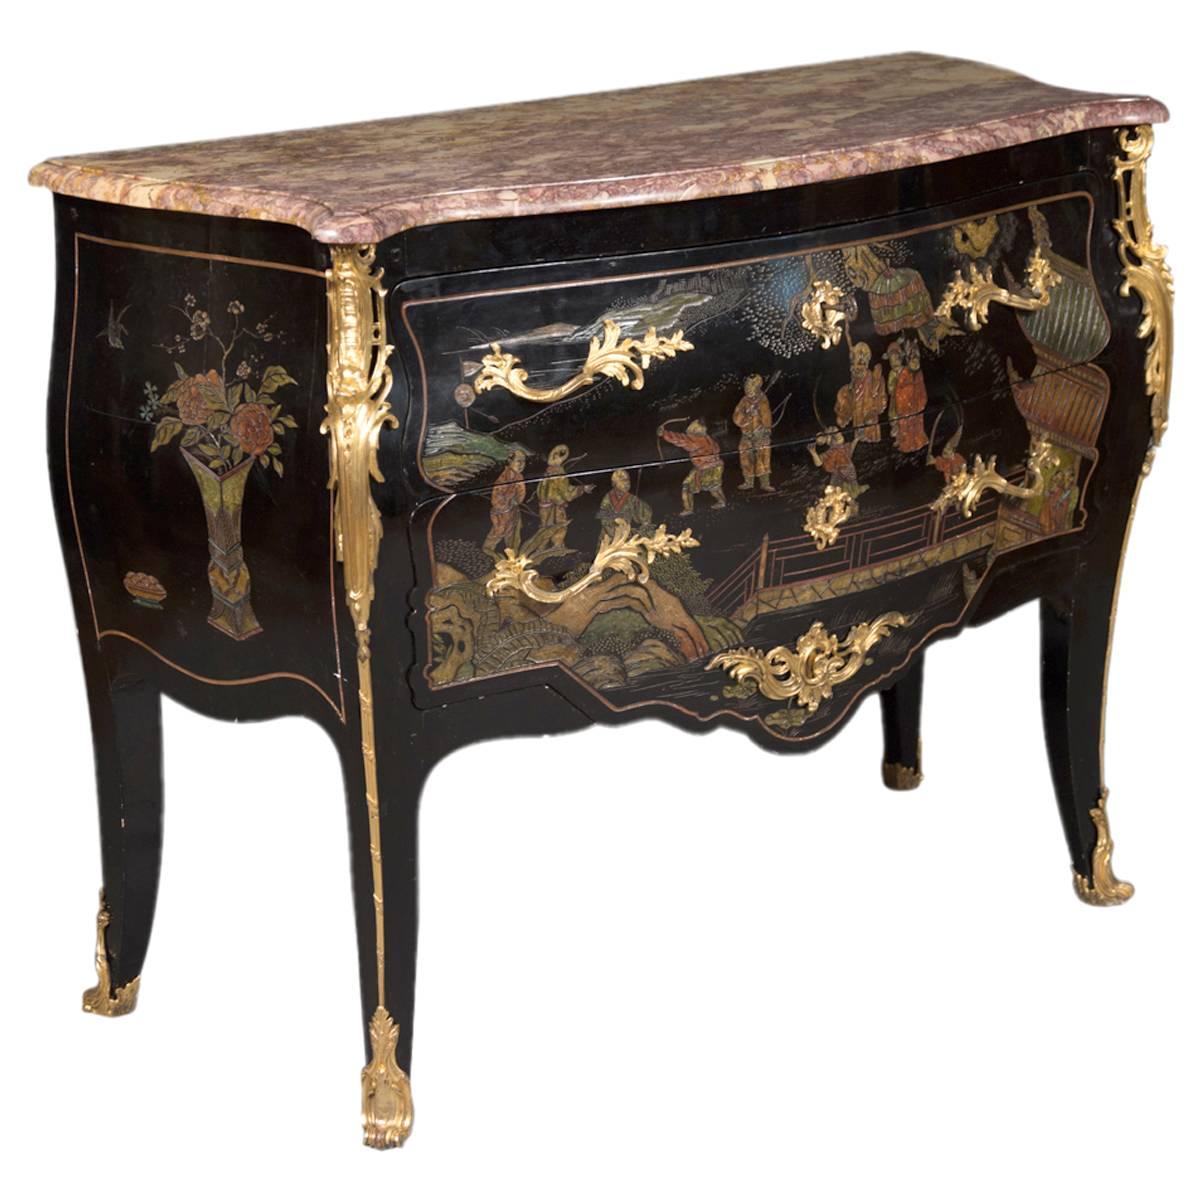 Commode chinoiseries française ancienne de style Louis XV montée sur bronze doré